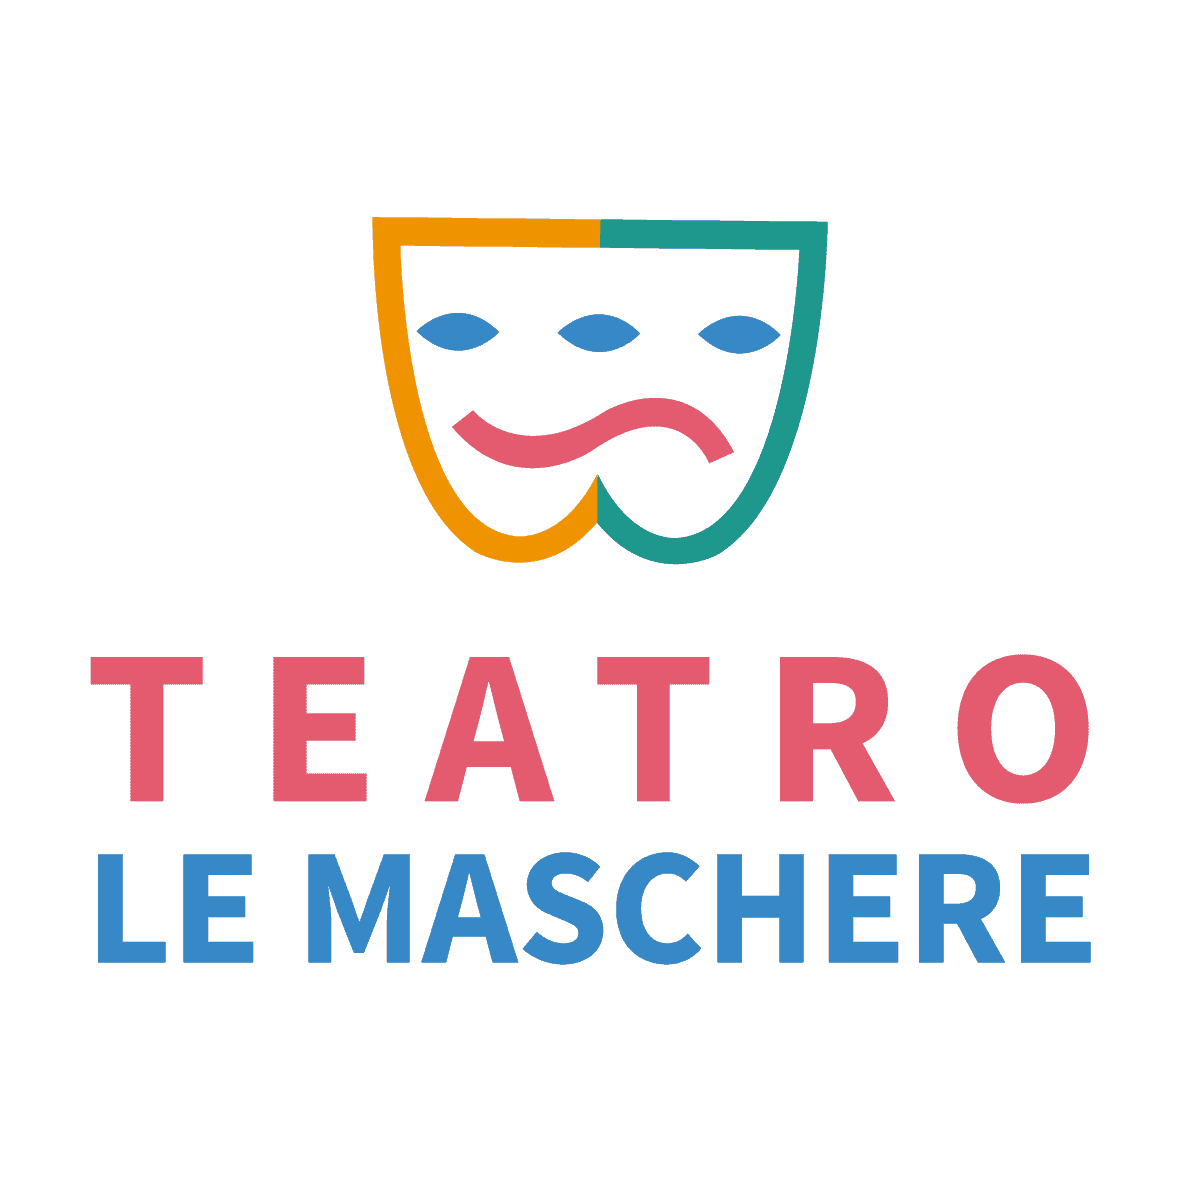 Teatro Le Maschere | Comunicazione integrata | Agenzia ORA